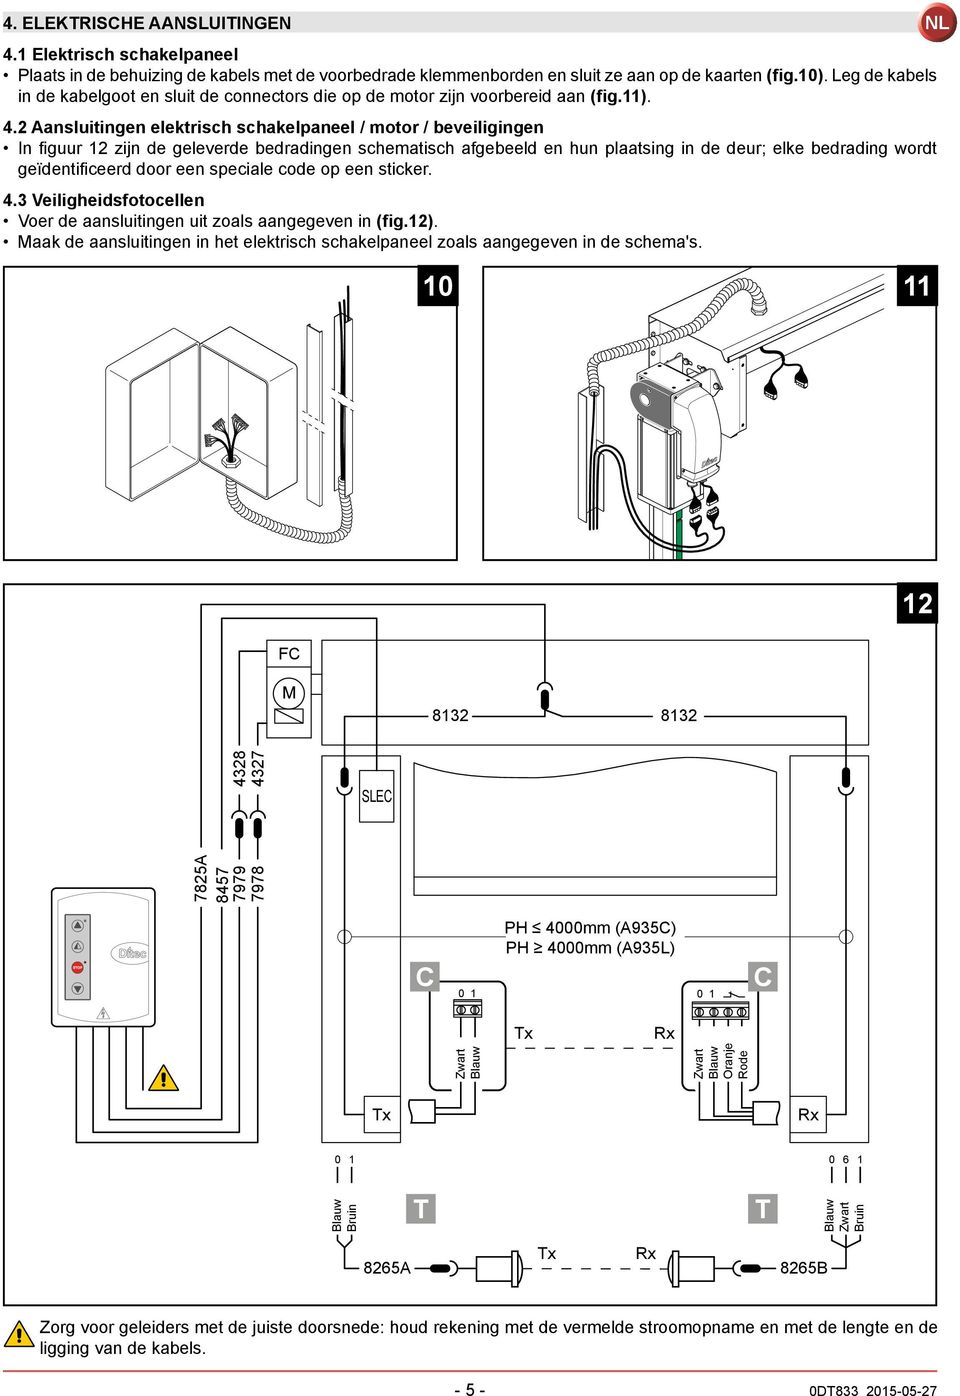 2 Aansluitingen elektrisch schakelpaneel / motor / beveiligingen In figuur 12 zijn de geleverde bedradingen schematisch afgebeeld en hun plaatsing in de deur; elke bedrading wordt geïdentificeerd